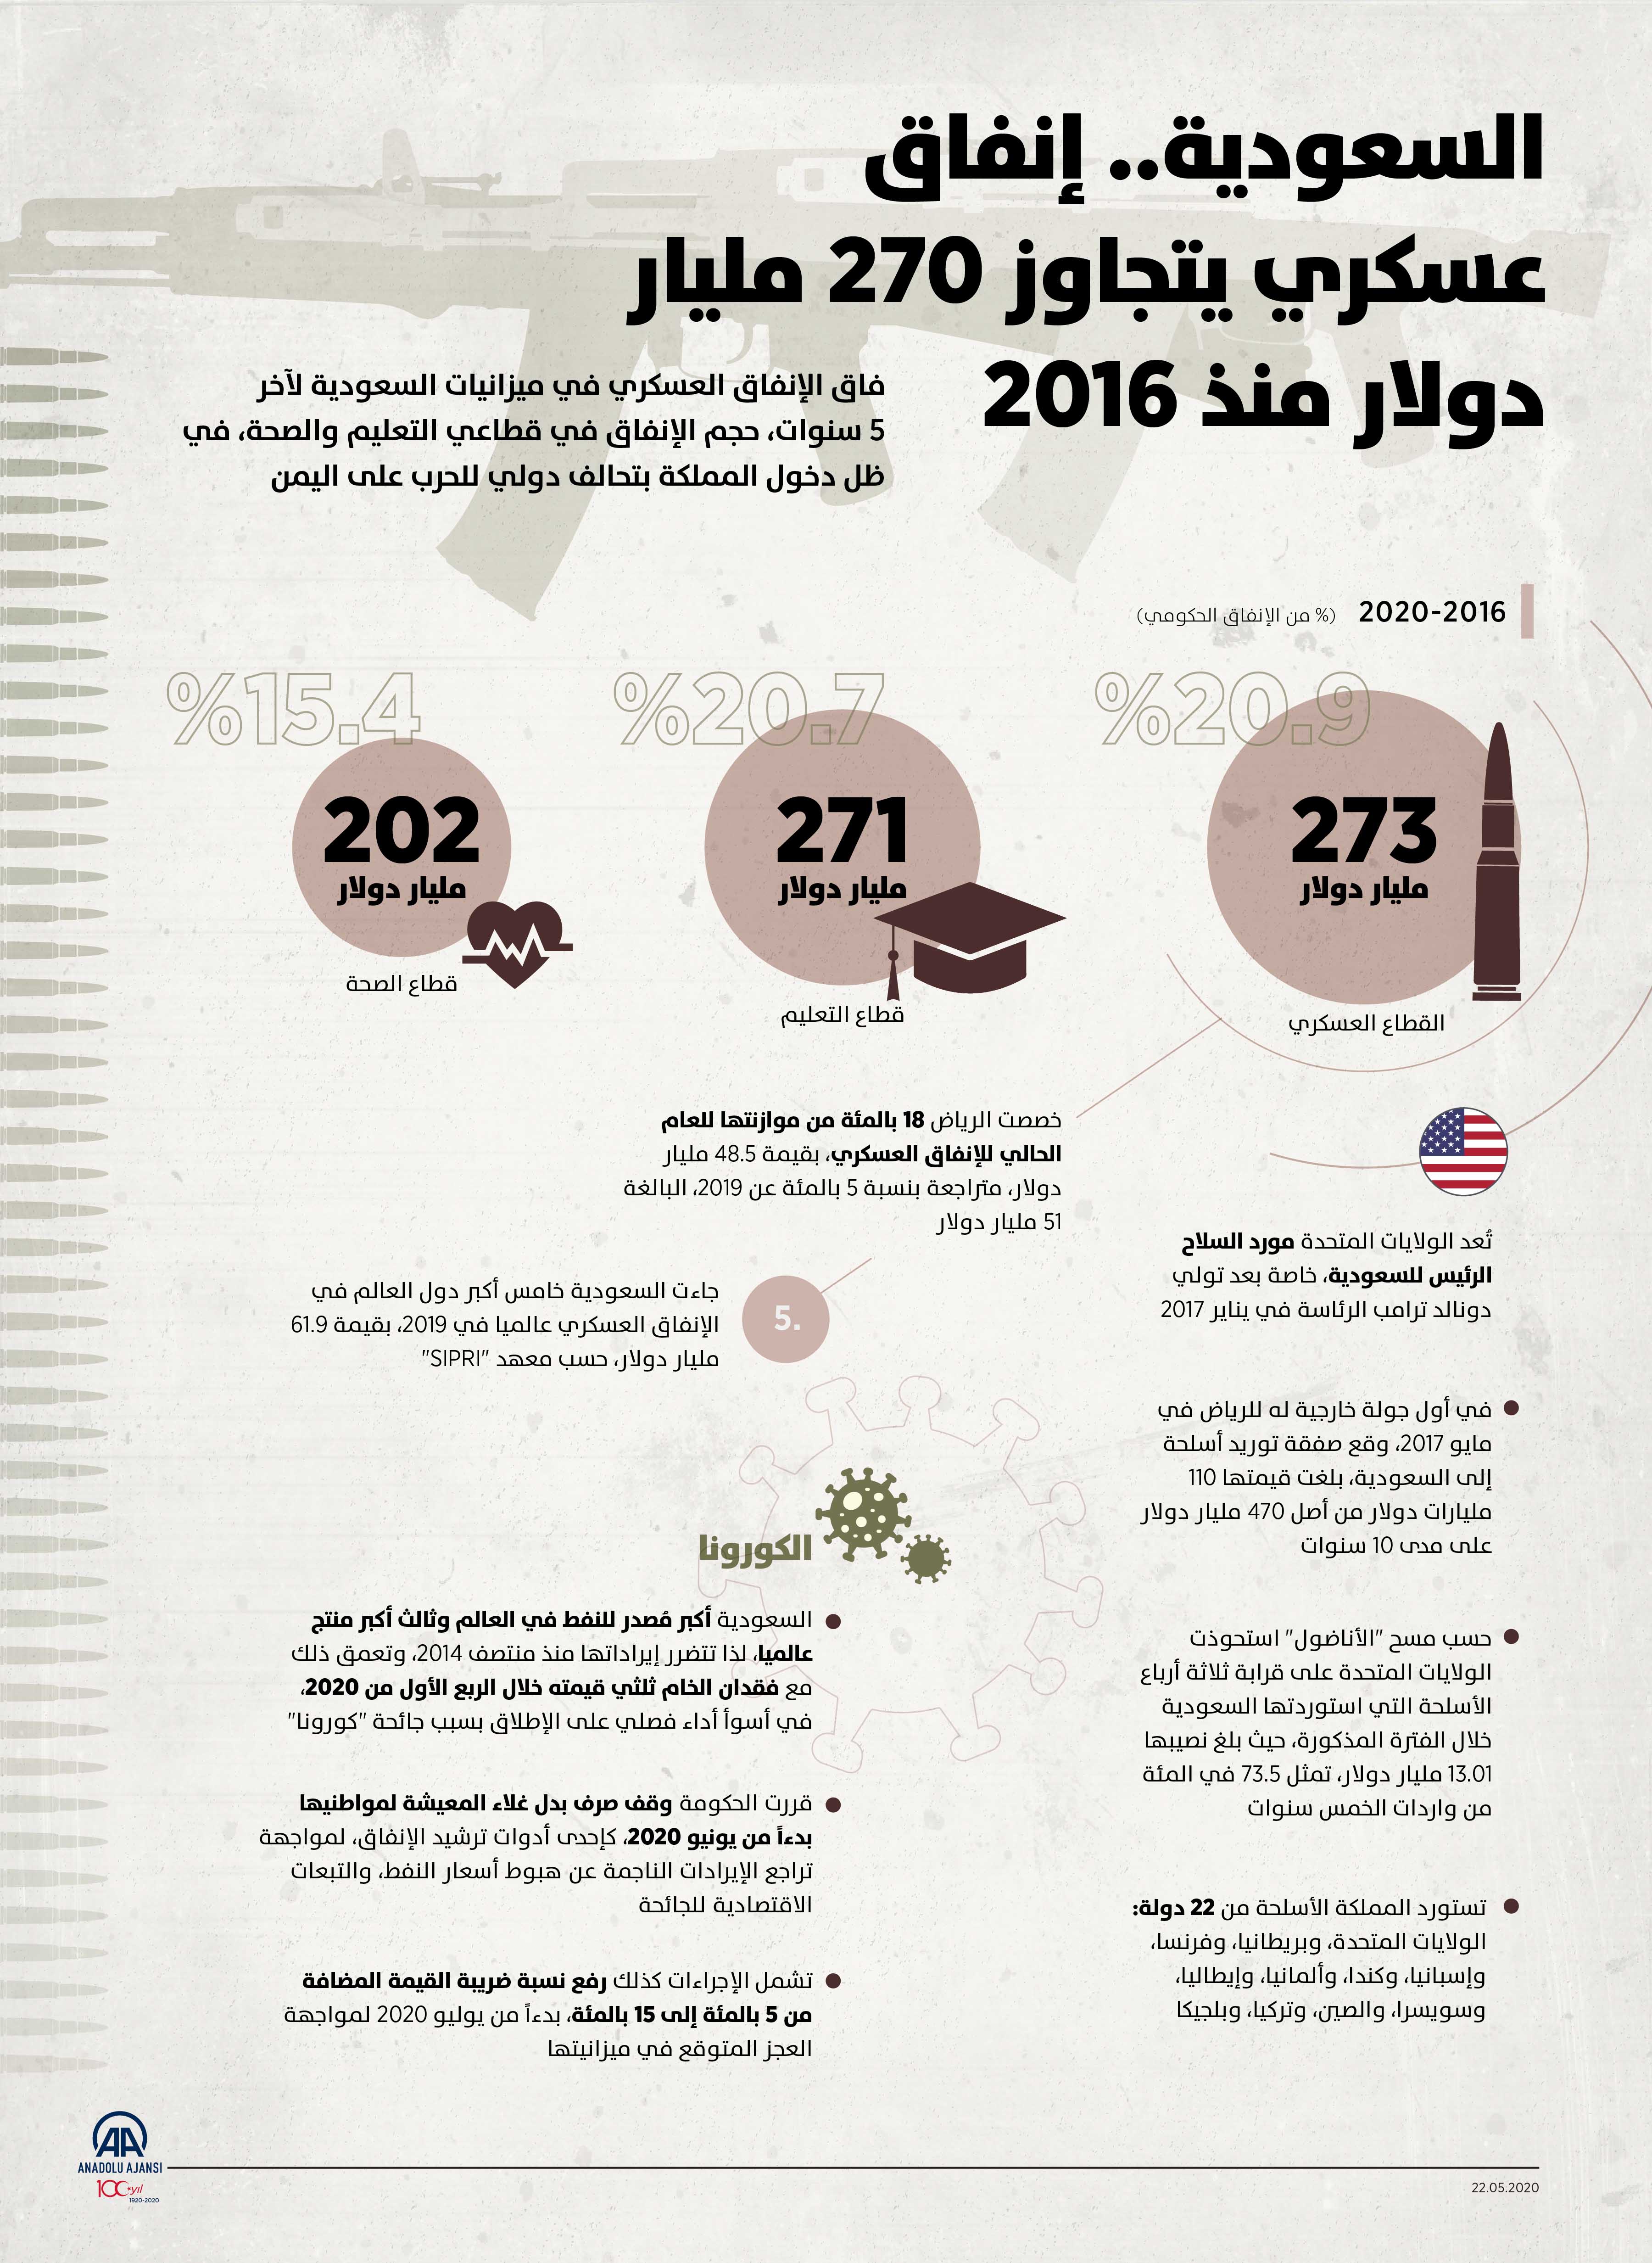 السعودية.. إنفاق عسكري يتجاوز 270 مليار دولار منذ 2016